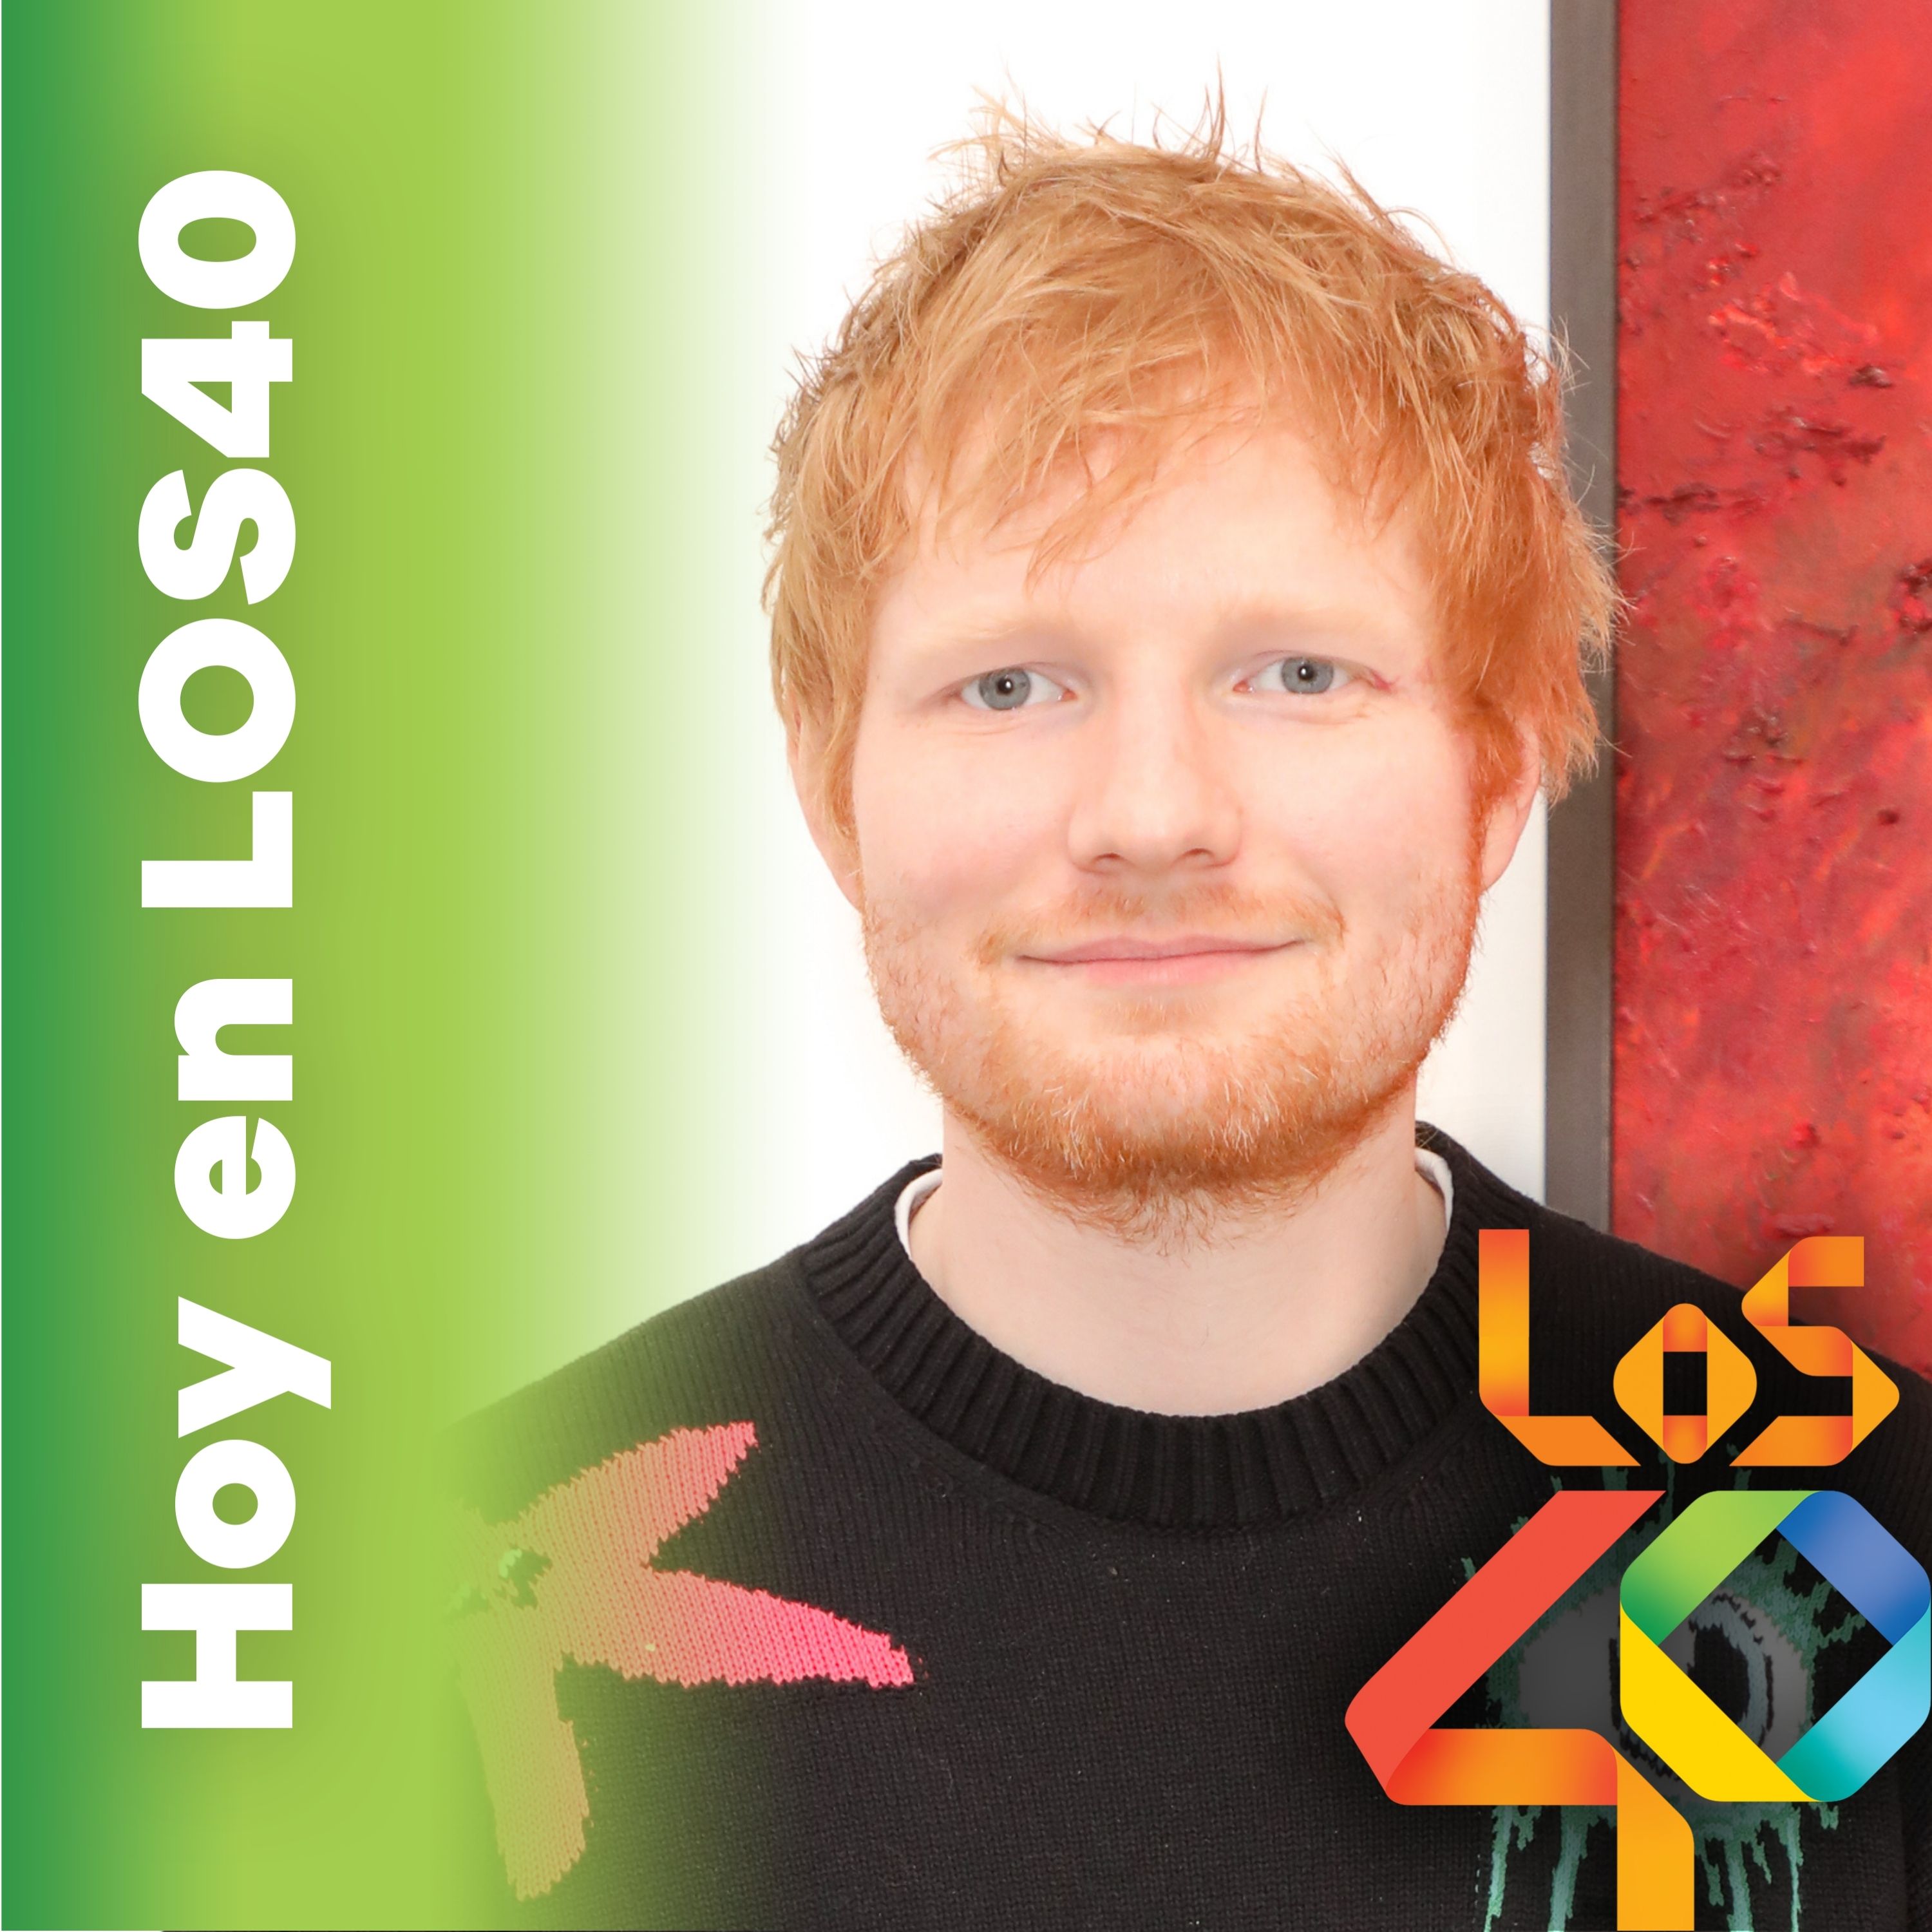 Las cuatro de Ed Sheeran - Noticias del 26 de mayo 